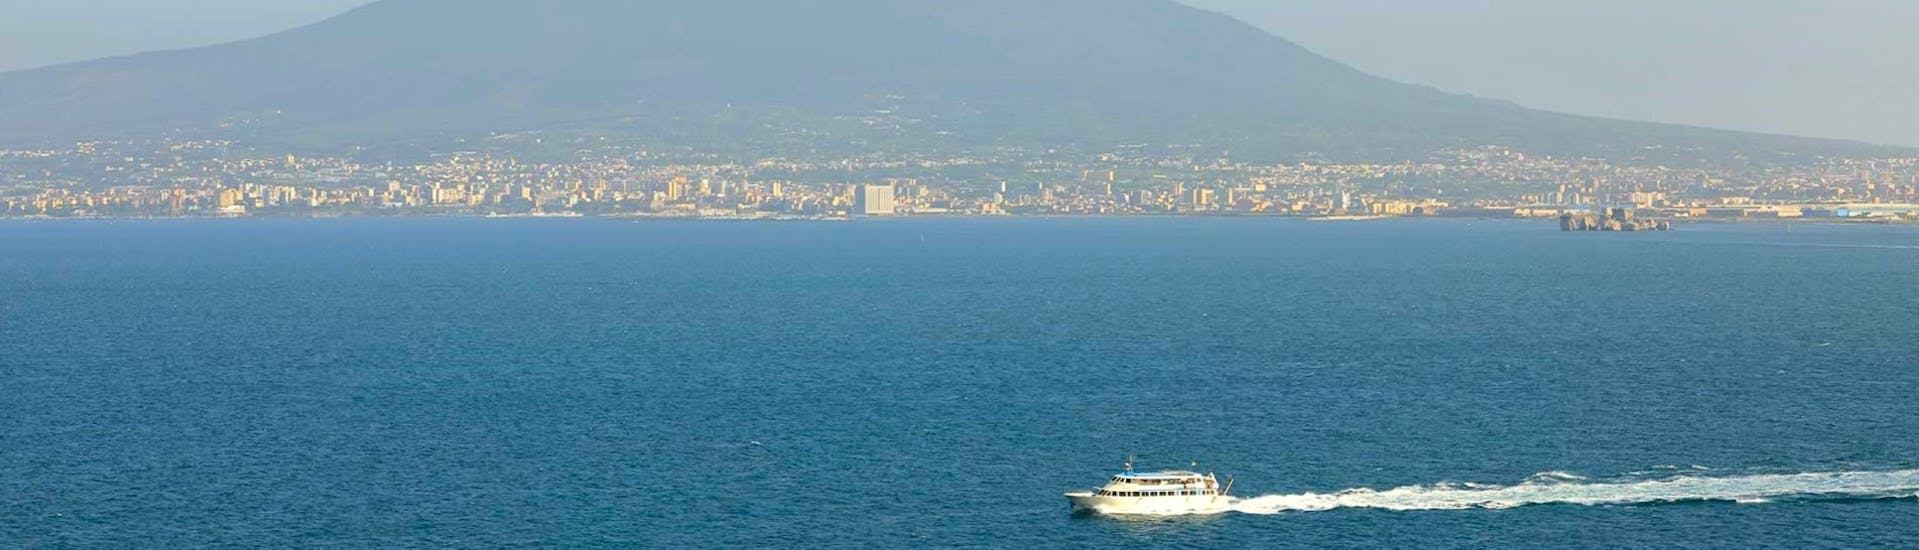 Gita in barca lungo la Costiera Amalfitana con soste a Positano e Amalfi.